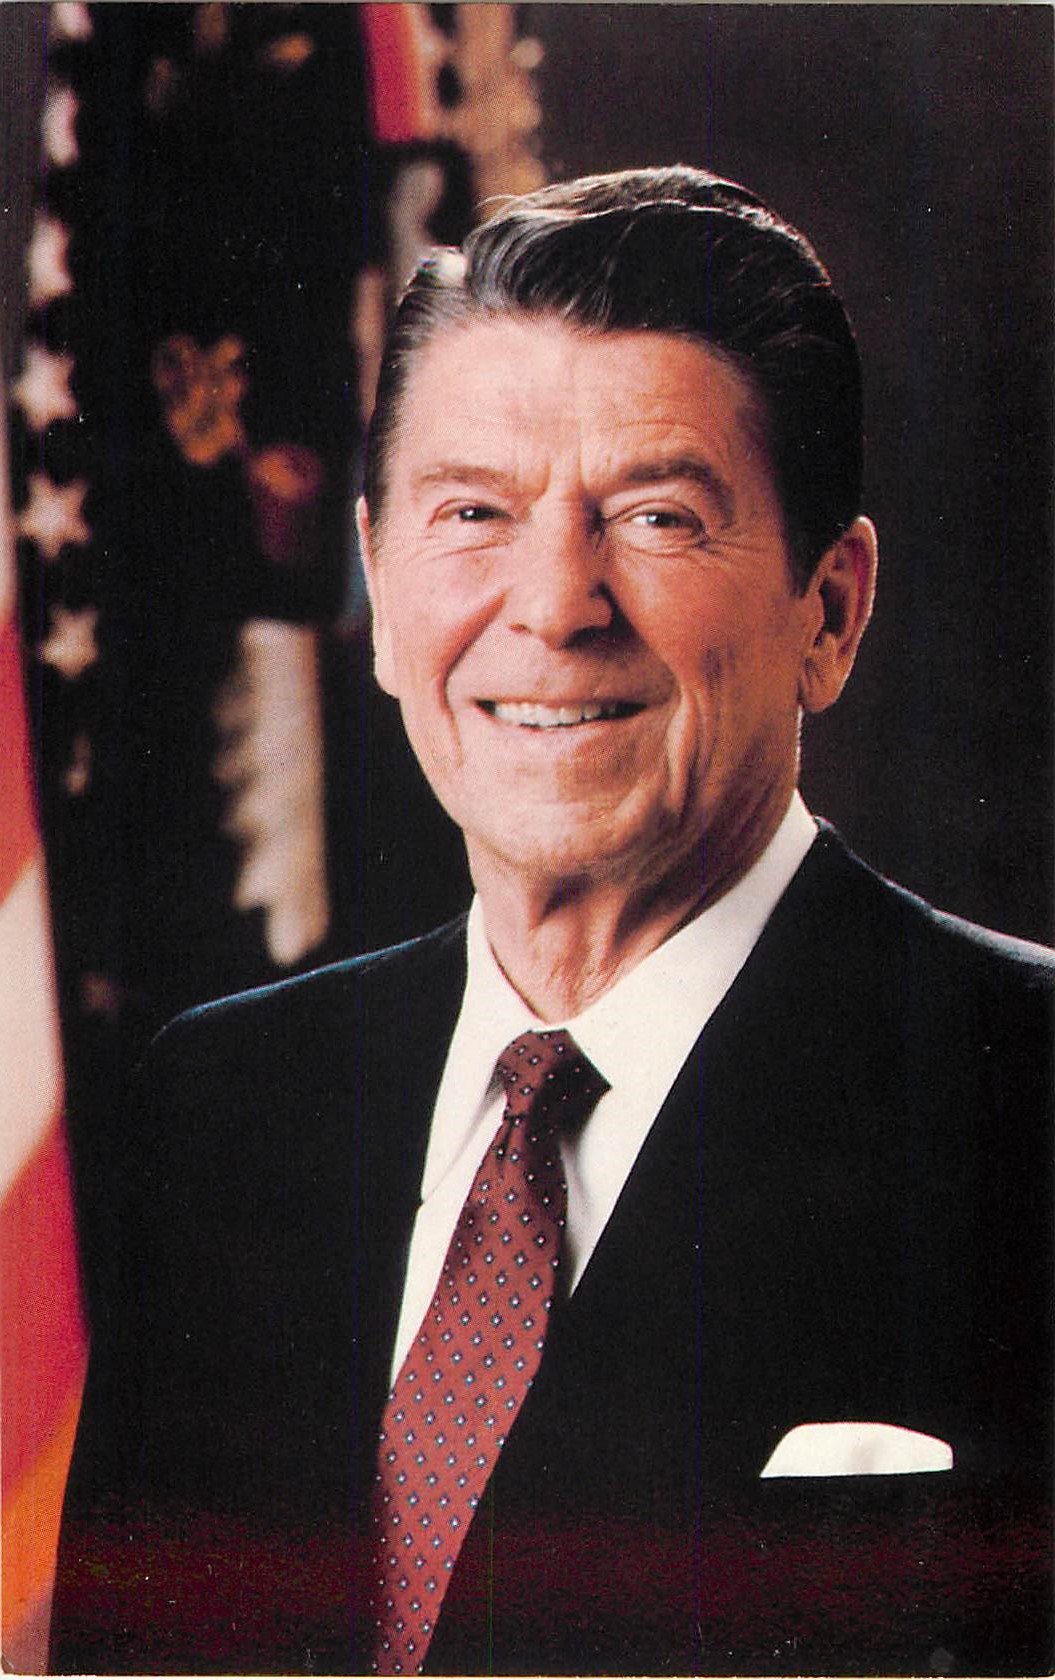 "Ronald Reagan; Official White House Portrait"